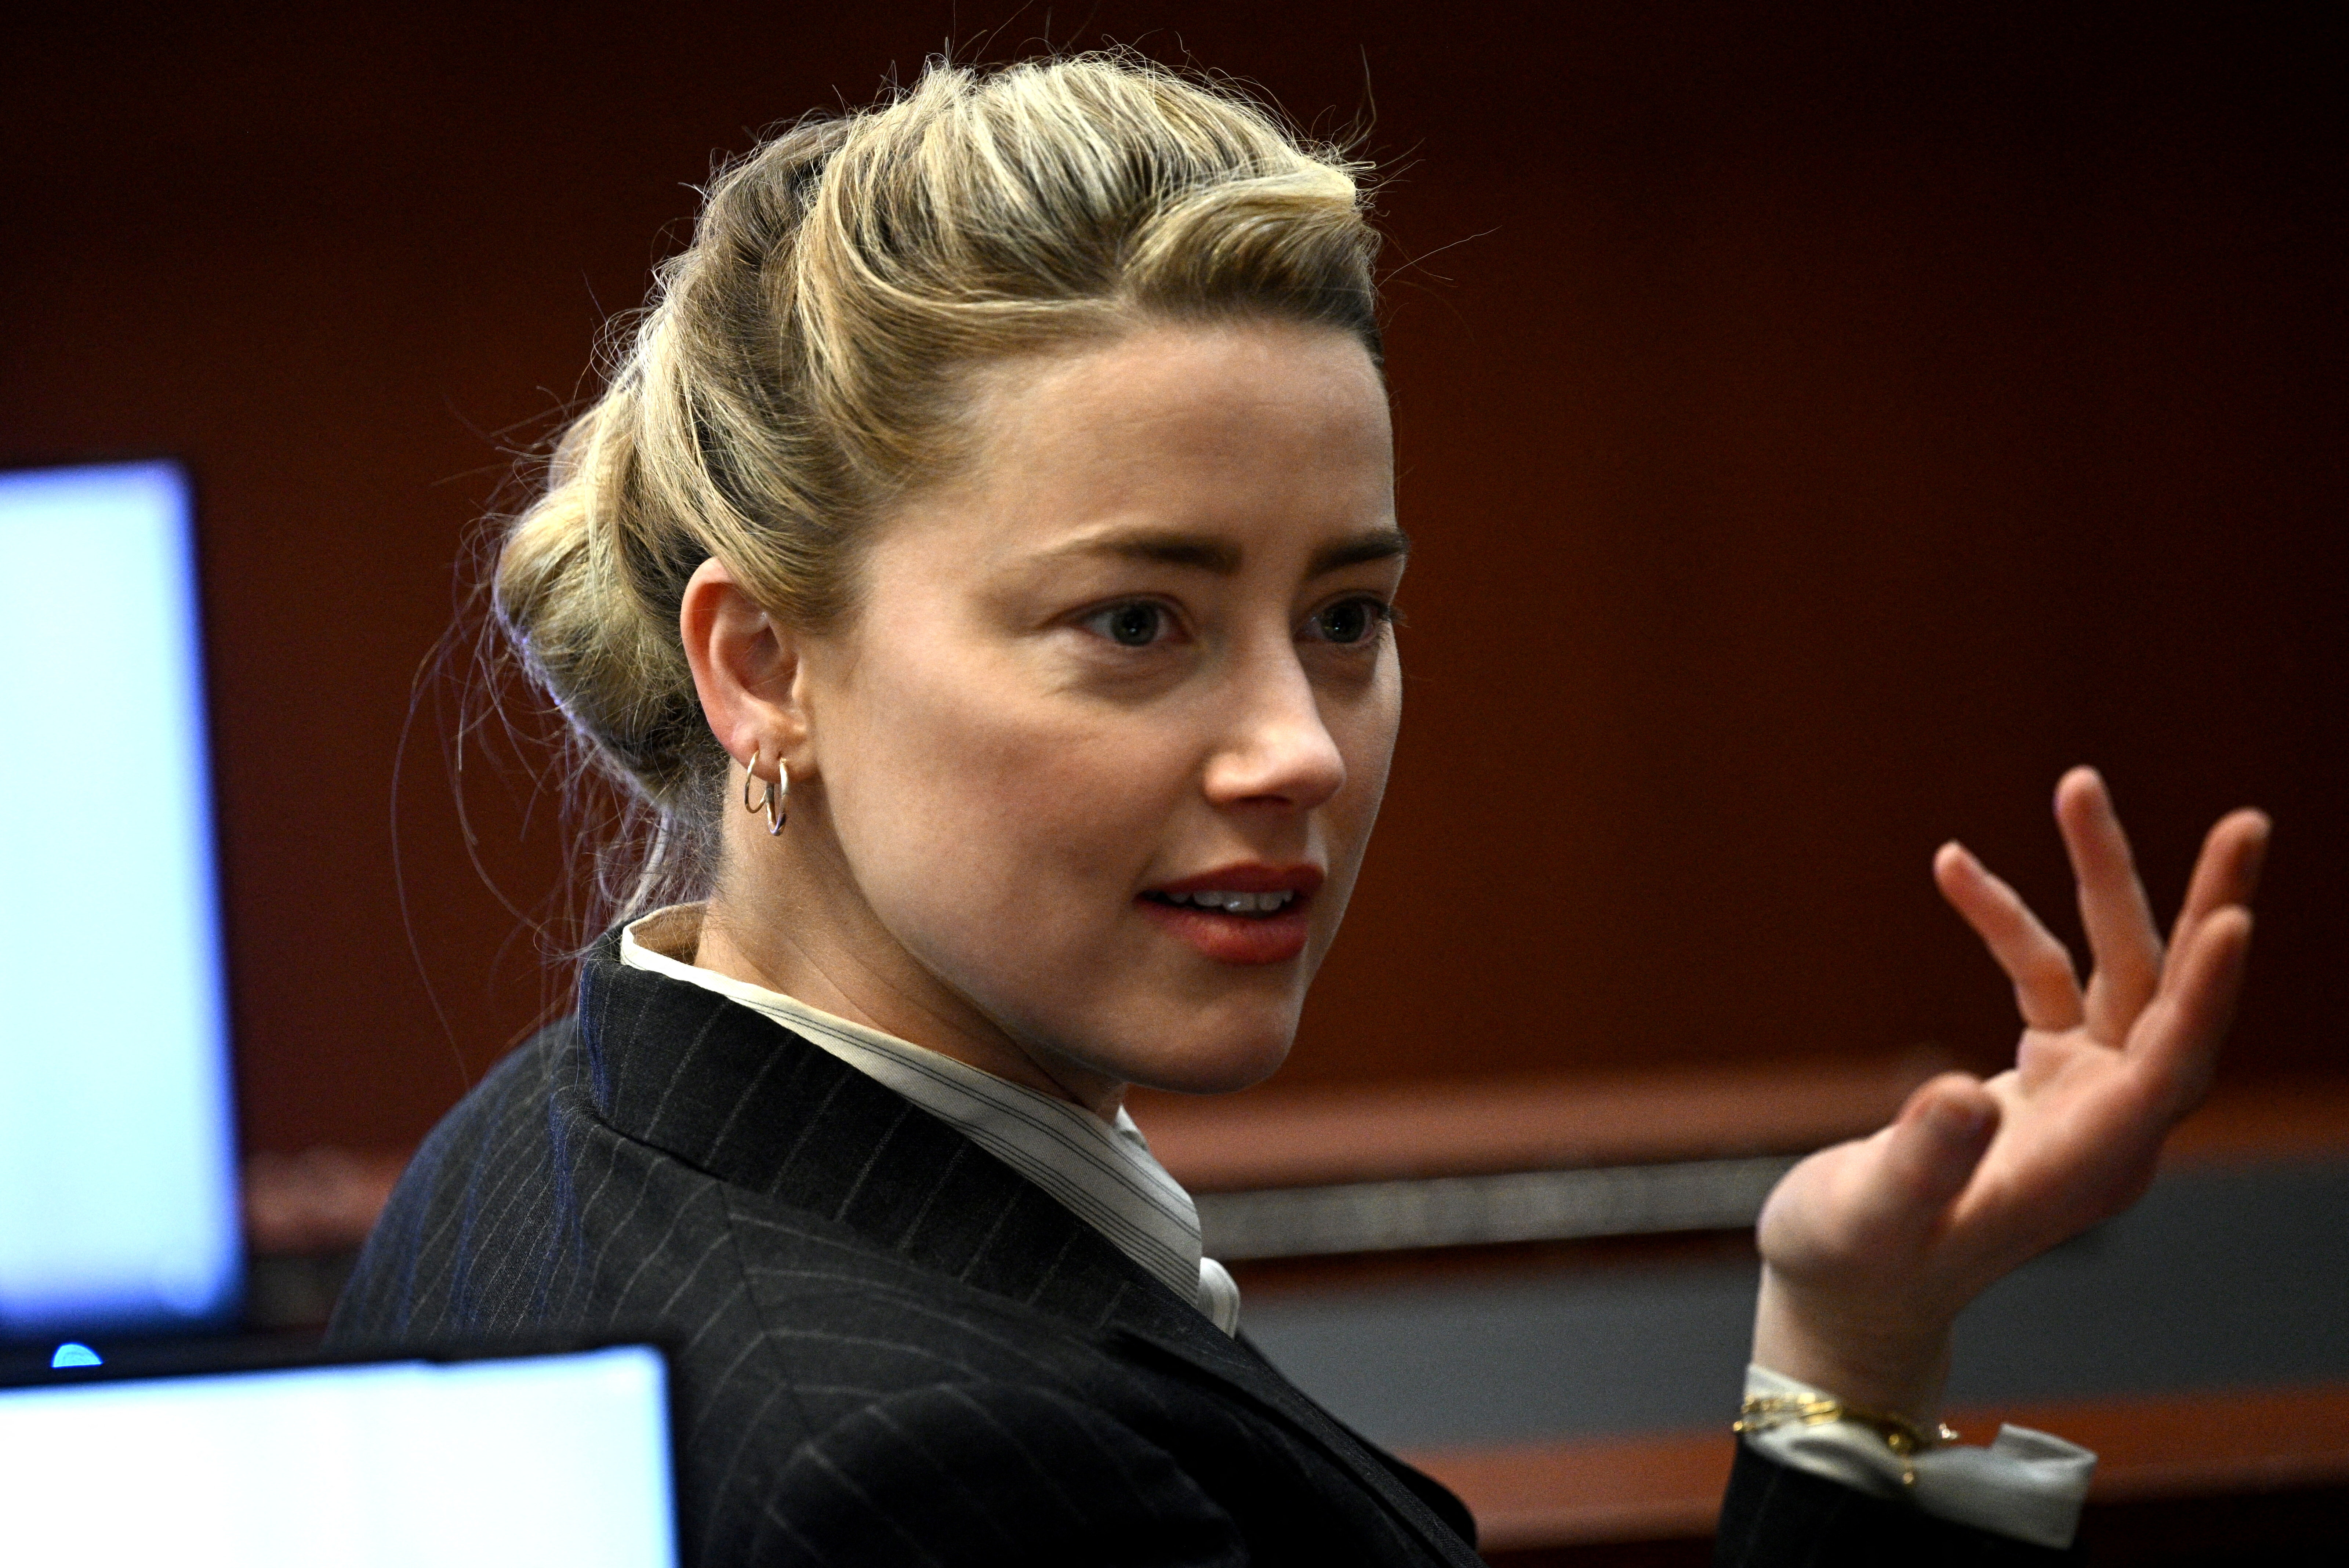 La actriz Amber Heard hace gestos durante un caso de difamación en su contra por parte de su exesposo, el actor Johnny Depp, en el juzgado de circuito del condado de Fairfax en Fairfax, Virginia, EE. UU., 17 de mayo de 2022. (Foto: Brendan Smialowski/Pool vía REUTERS)
